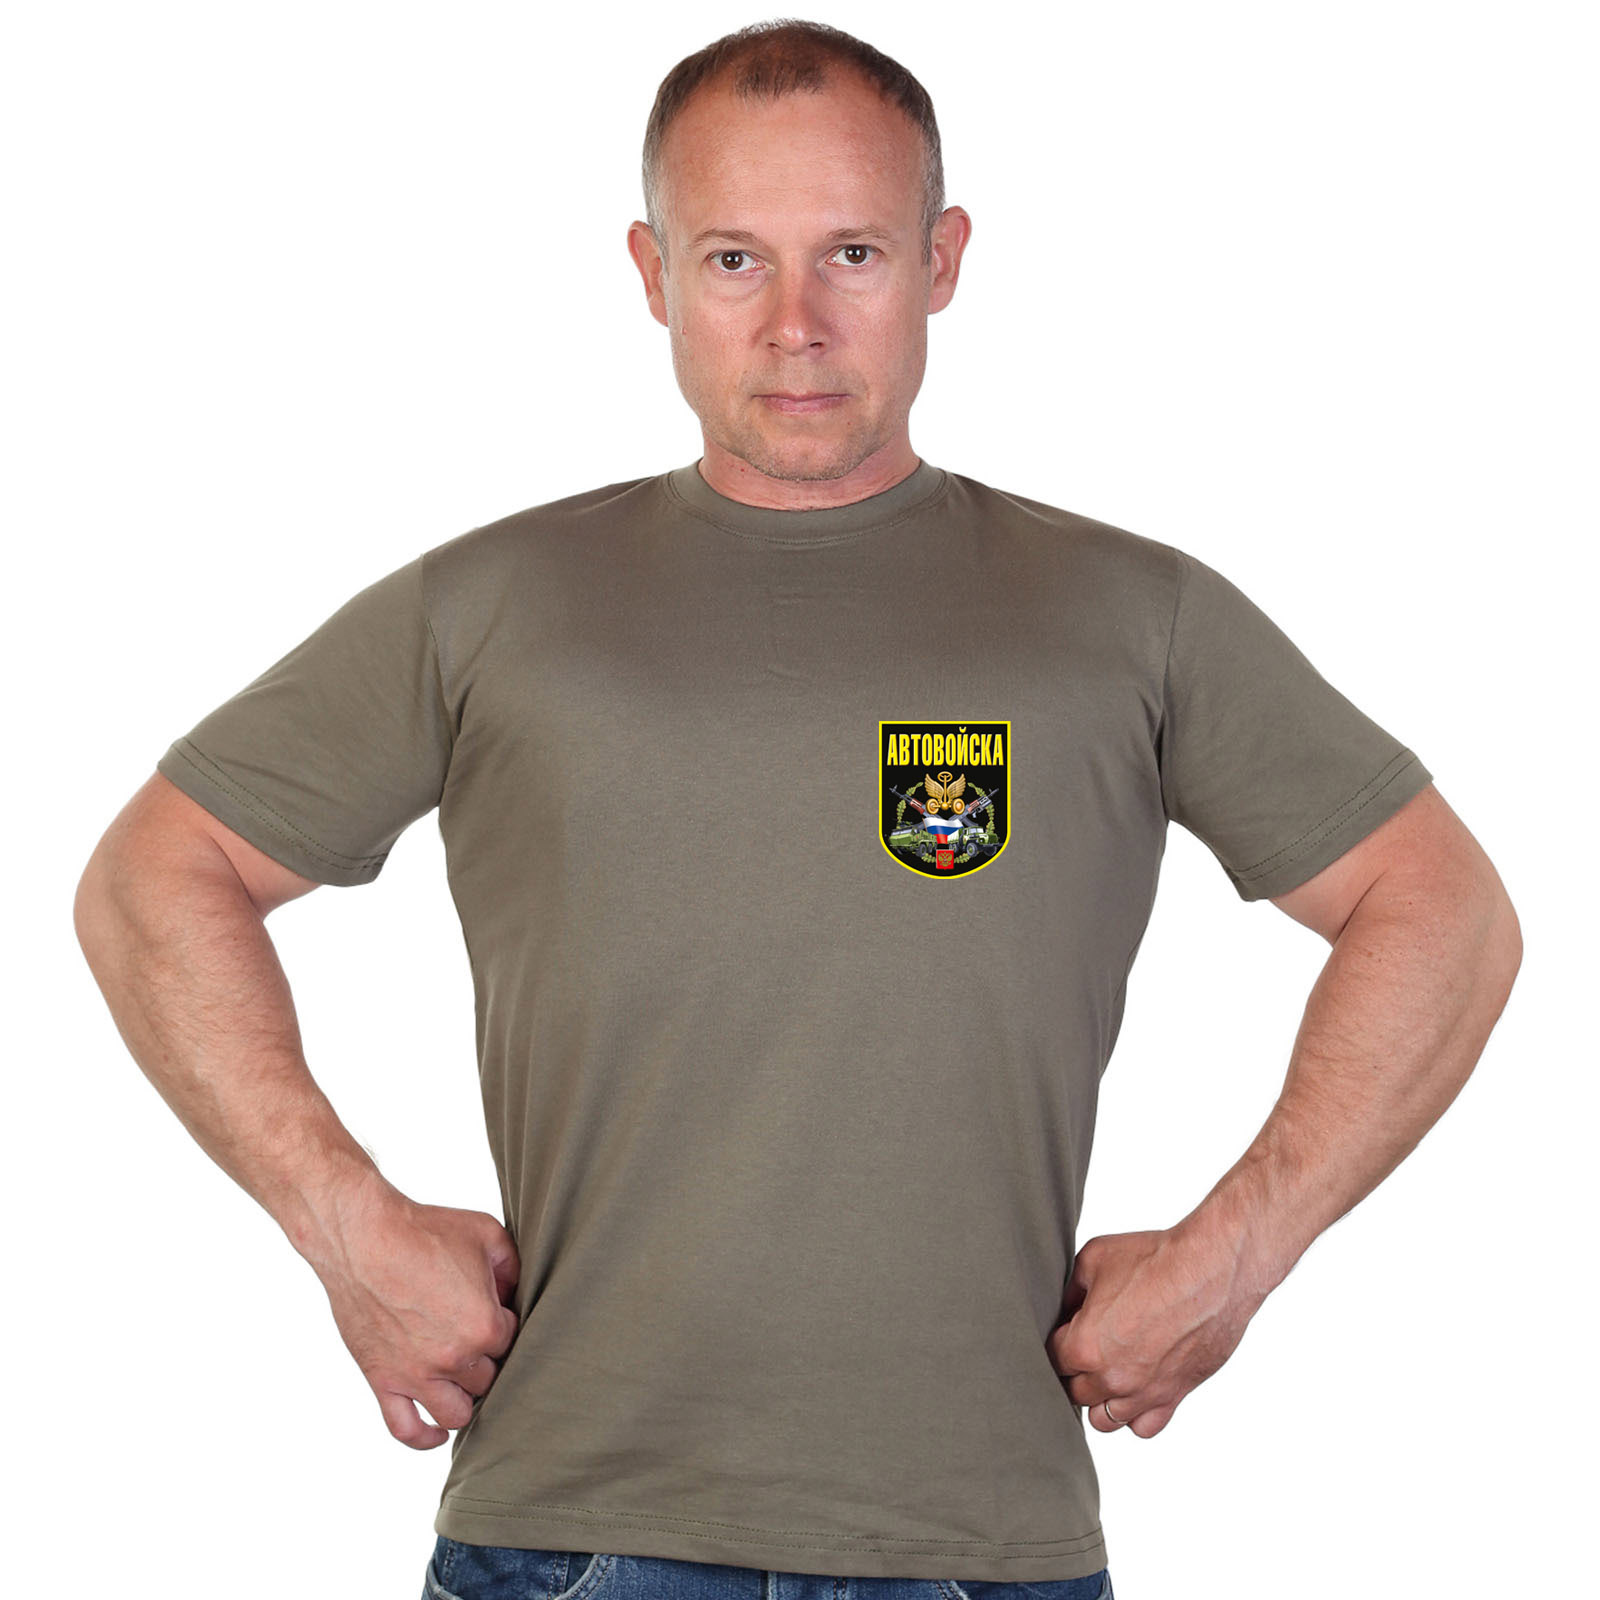 Краповая футболка с термотрансфером "Автовойска" 